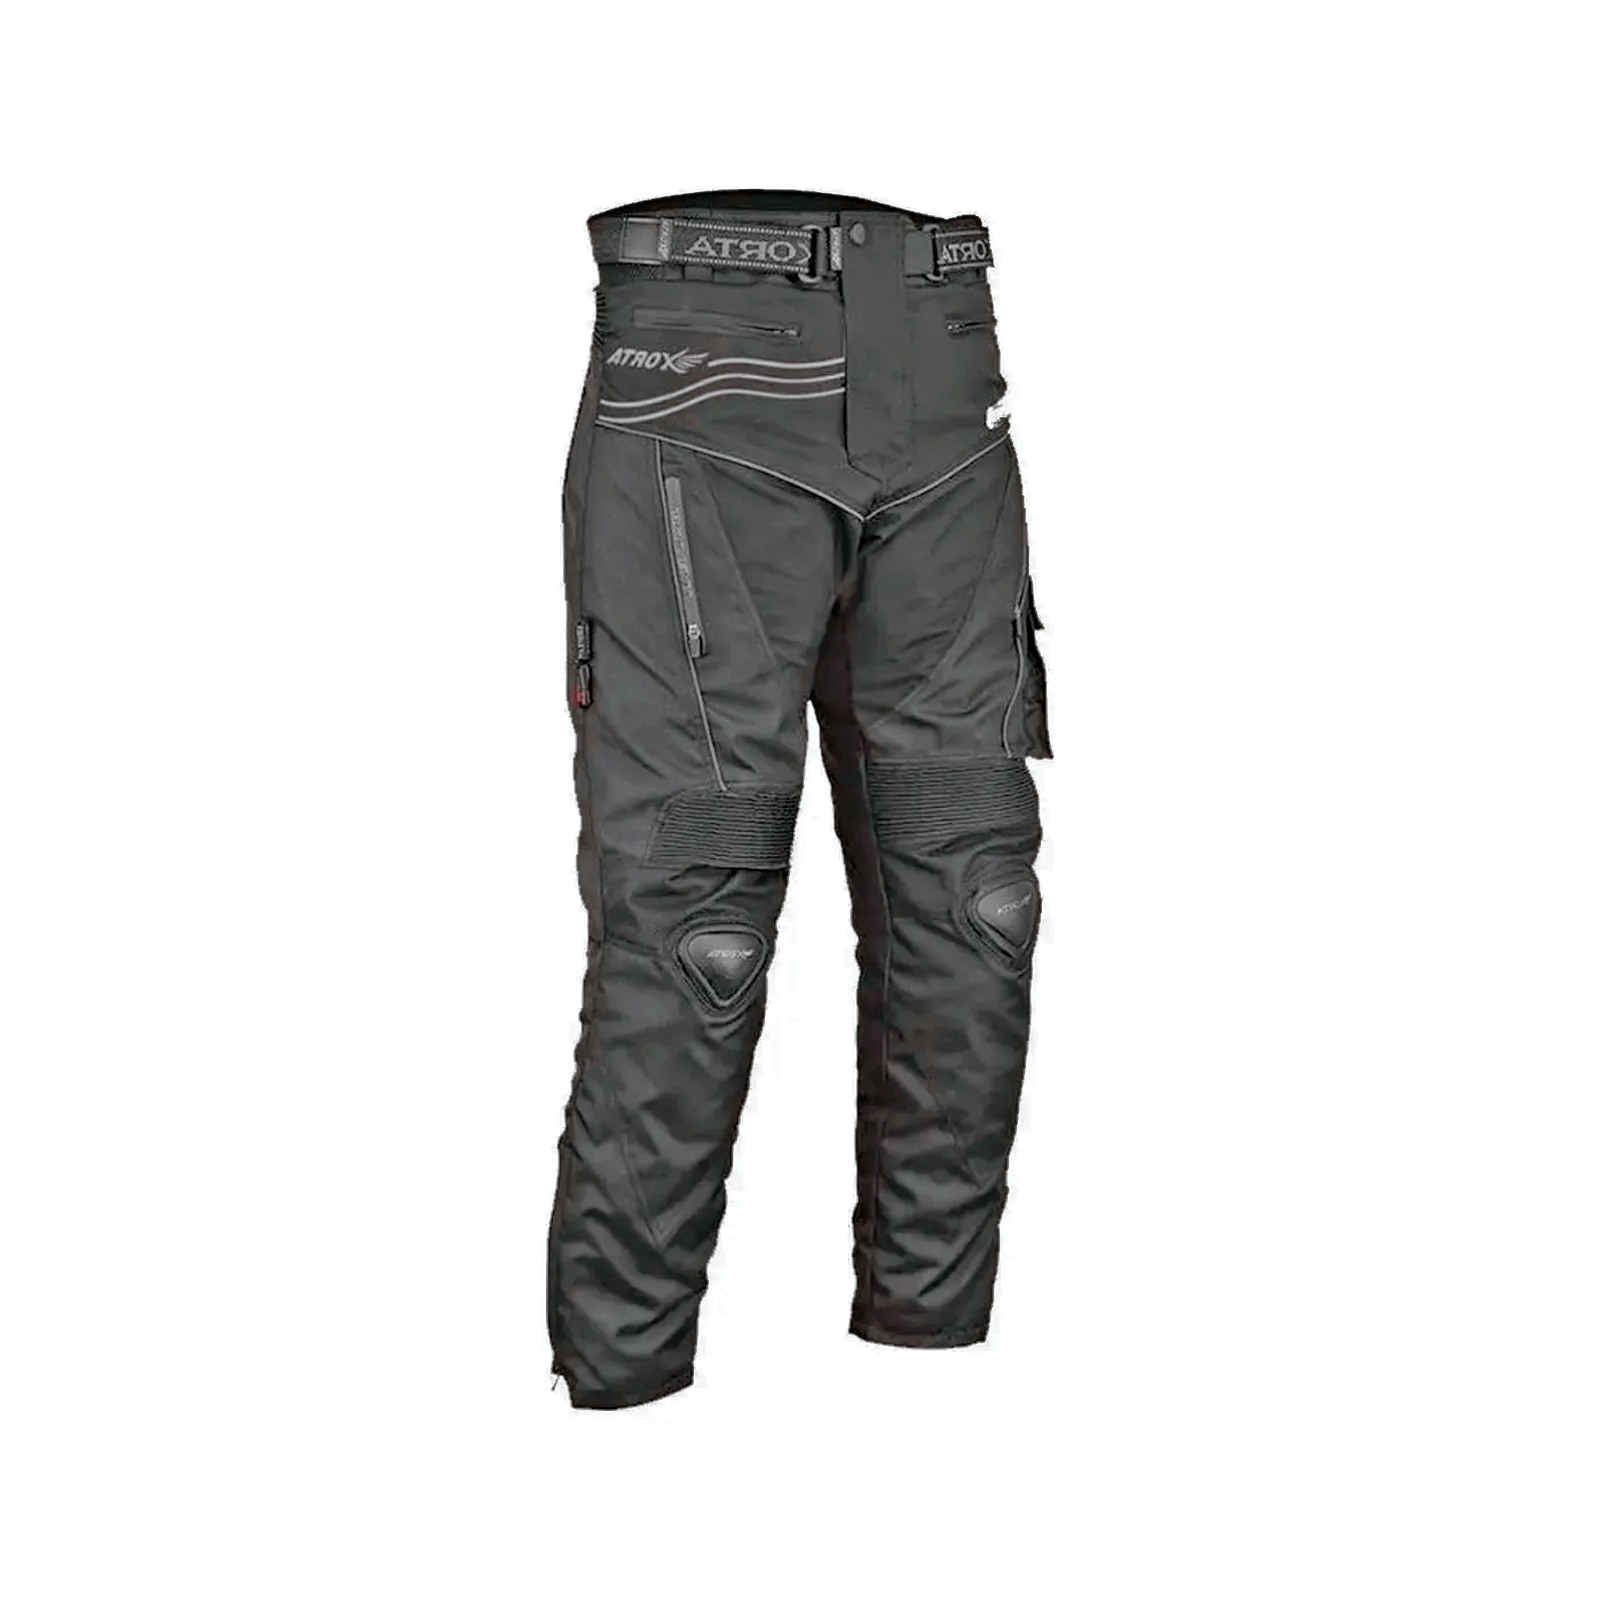 Pantalon Atrox para Motociclista Con Protecciones Certificado.